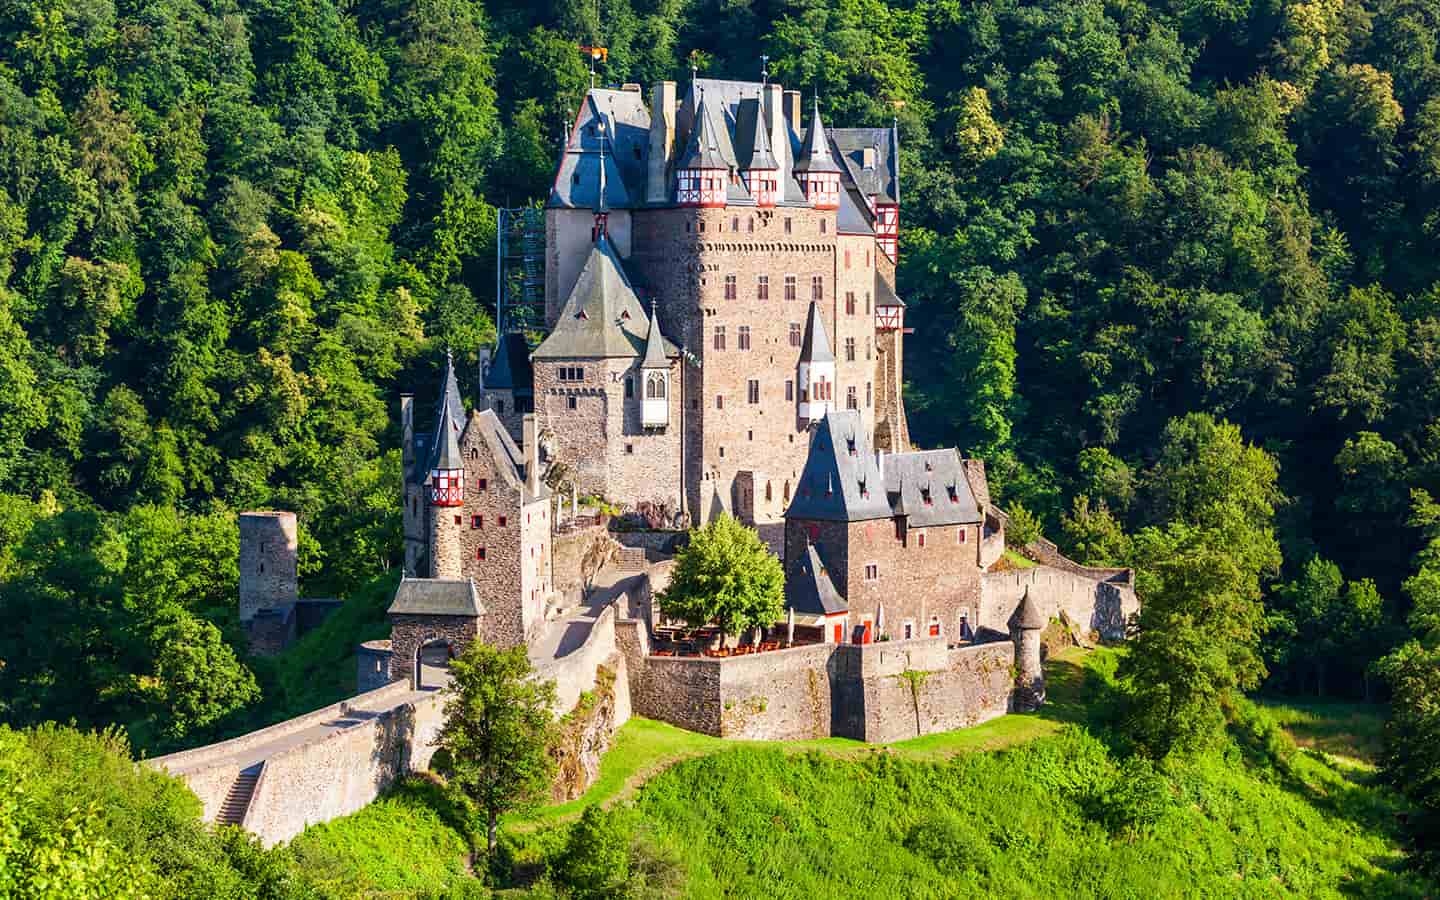 Burg Eltz, mittelalterliches Schloss in den Hügeln über dem Moselfluss bei Koblenz in Deutschland